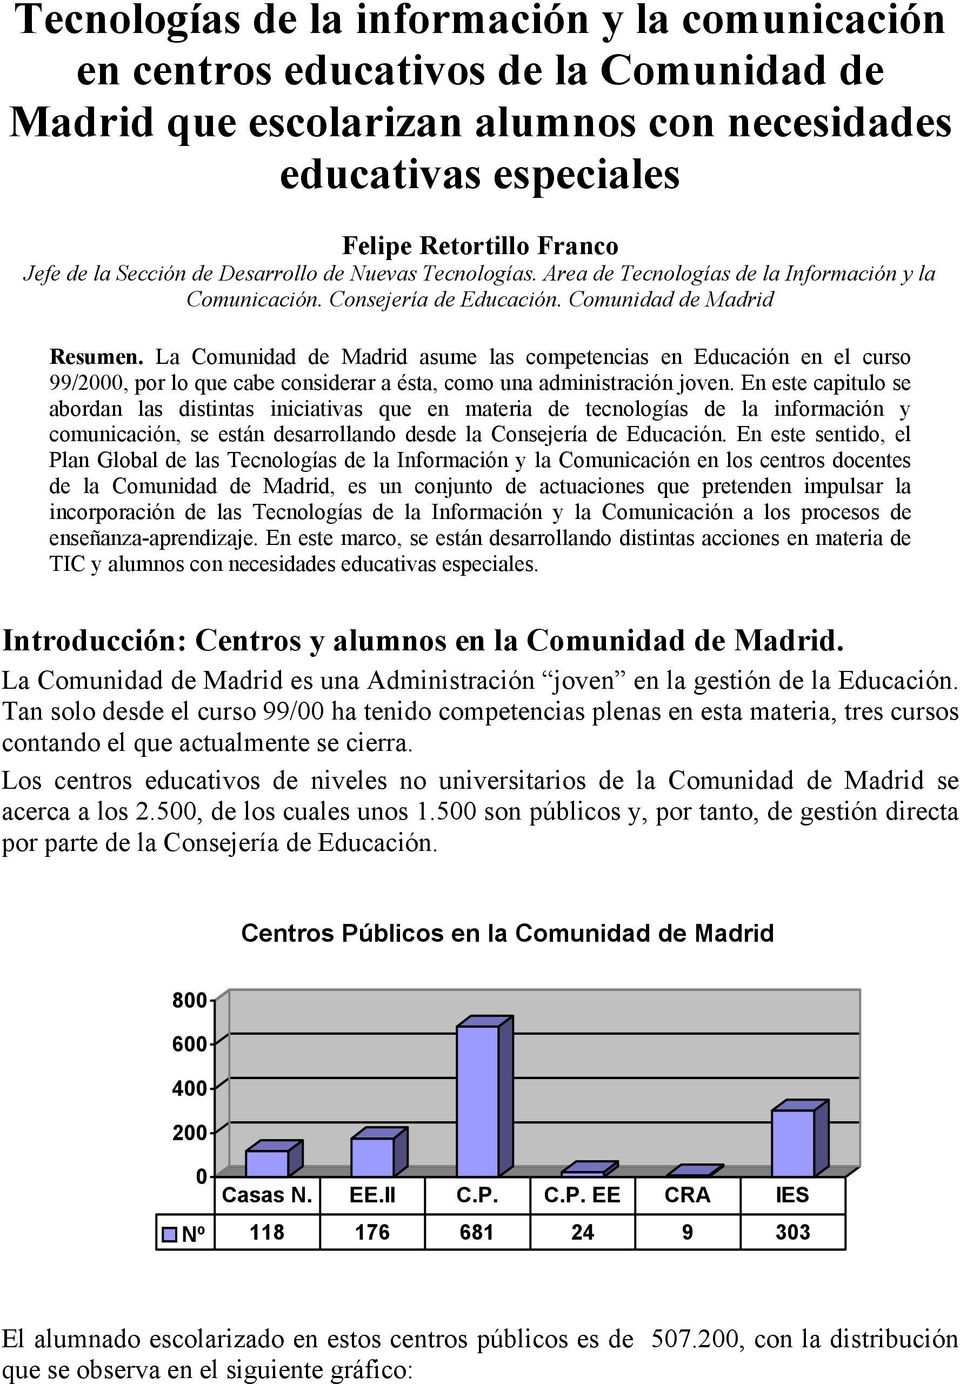 La Comunidad de Madrid asume las competencias en Educación en el curso 99/2000, por lo que cabe considerar a ésta, como una administración joven.